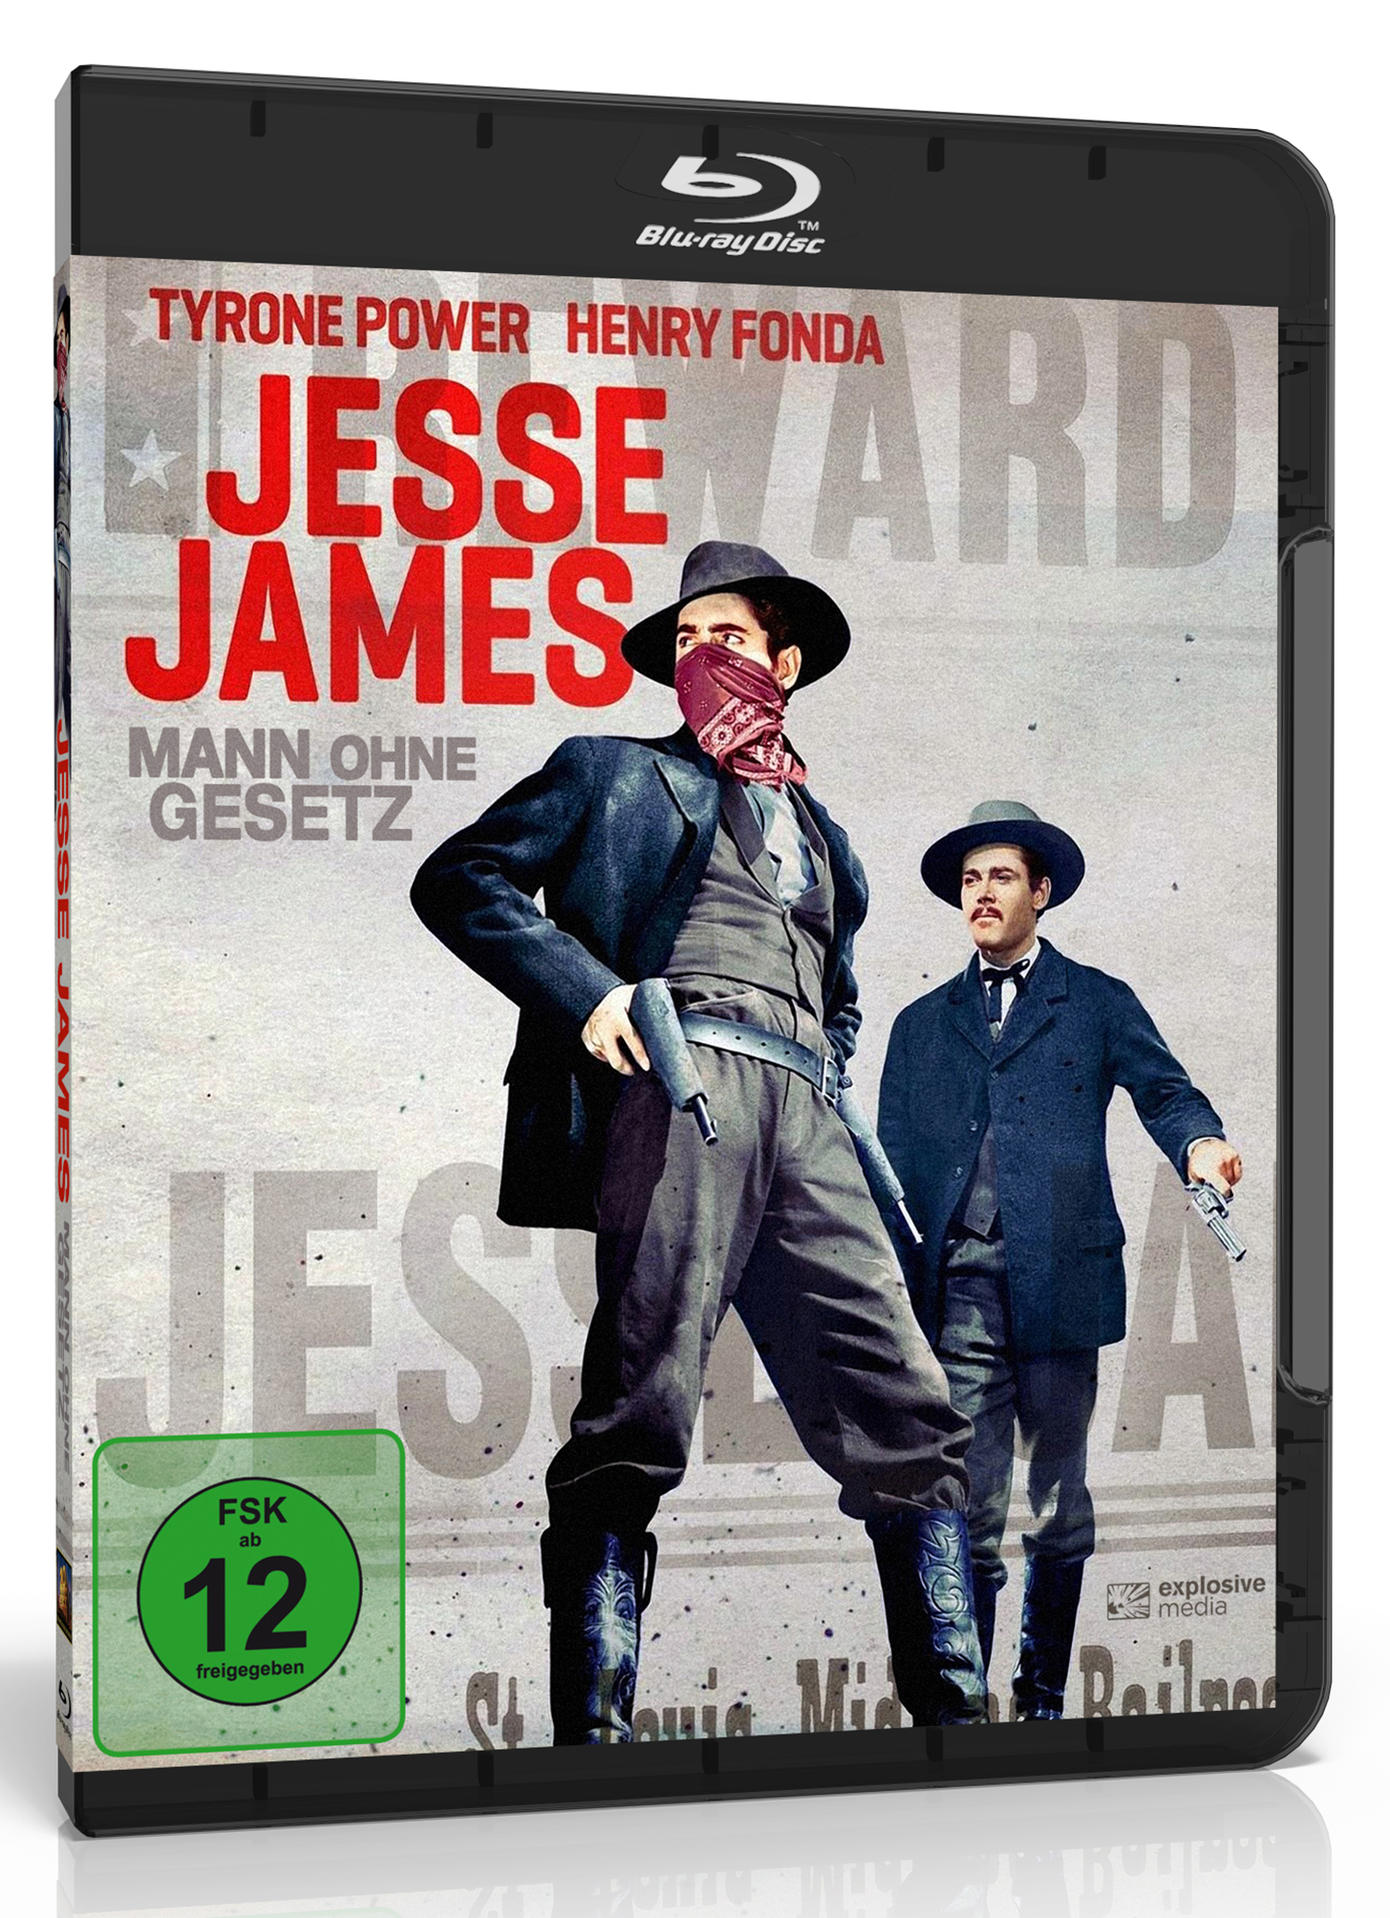 Jesse James - Mann ohne Blu-ray Gesetz